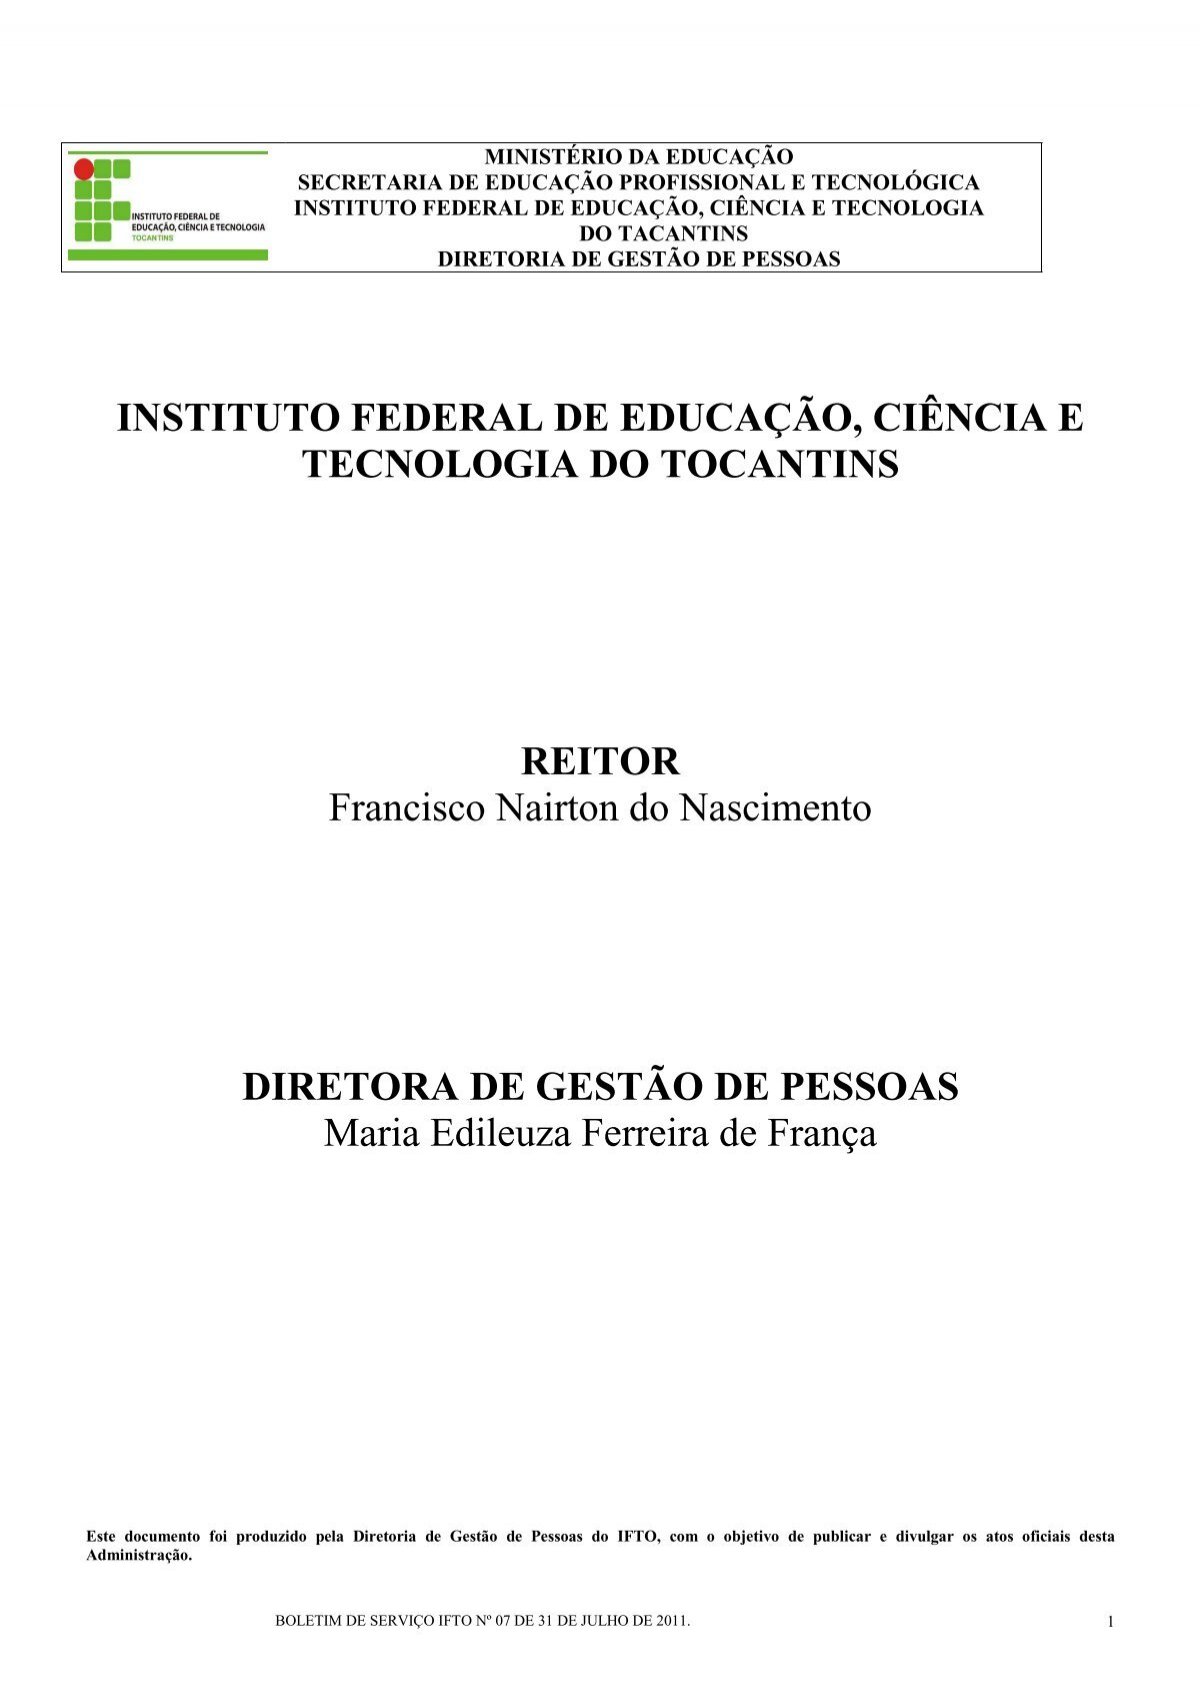 Rafael Dutra - Professor - IFRJ - Instituto Federal do Rio de Janeiro